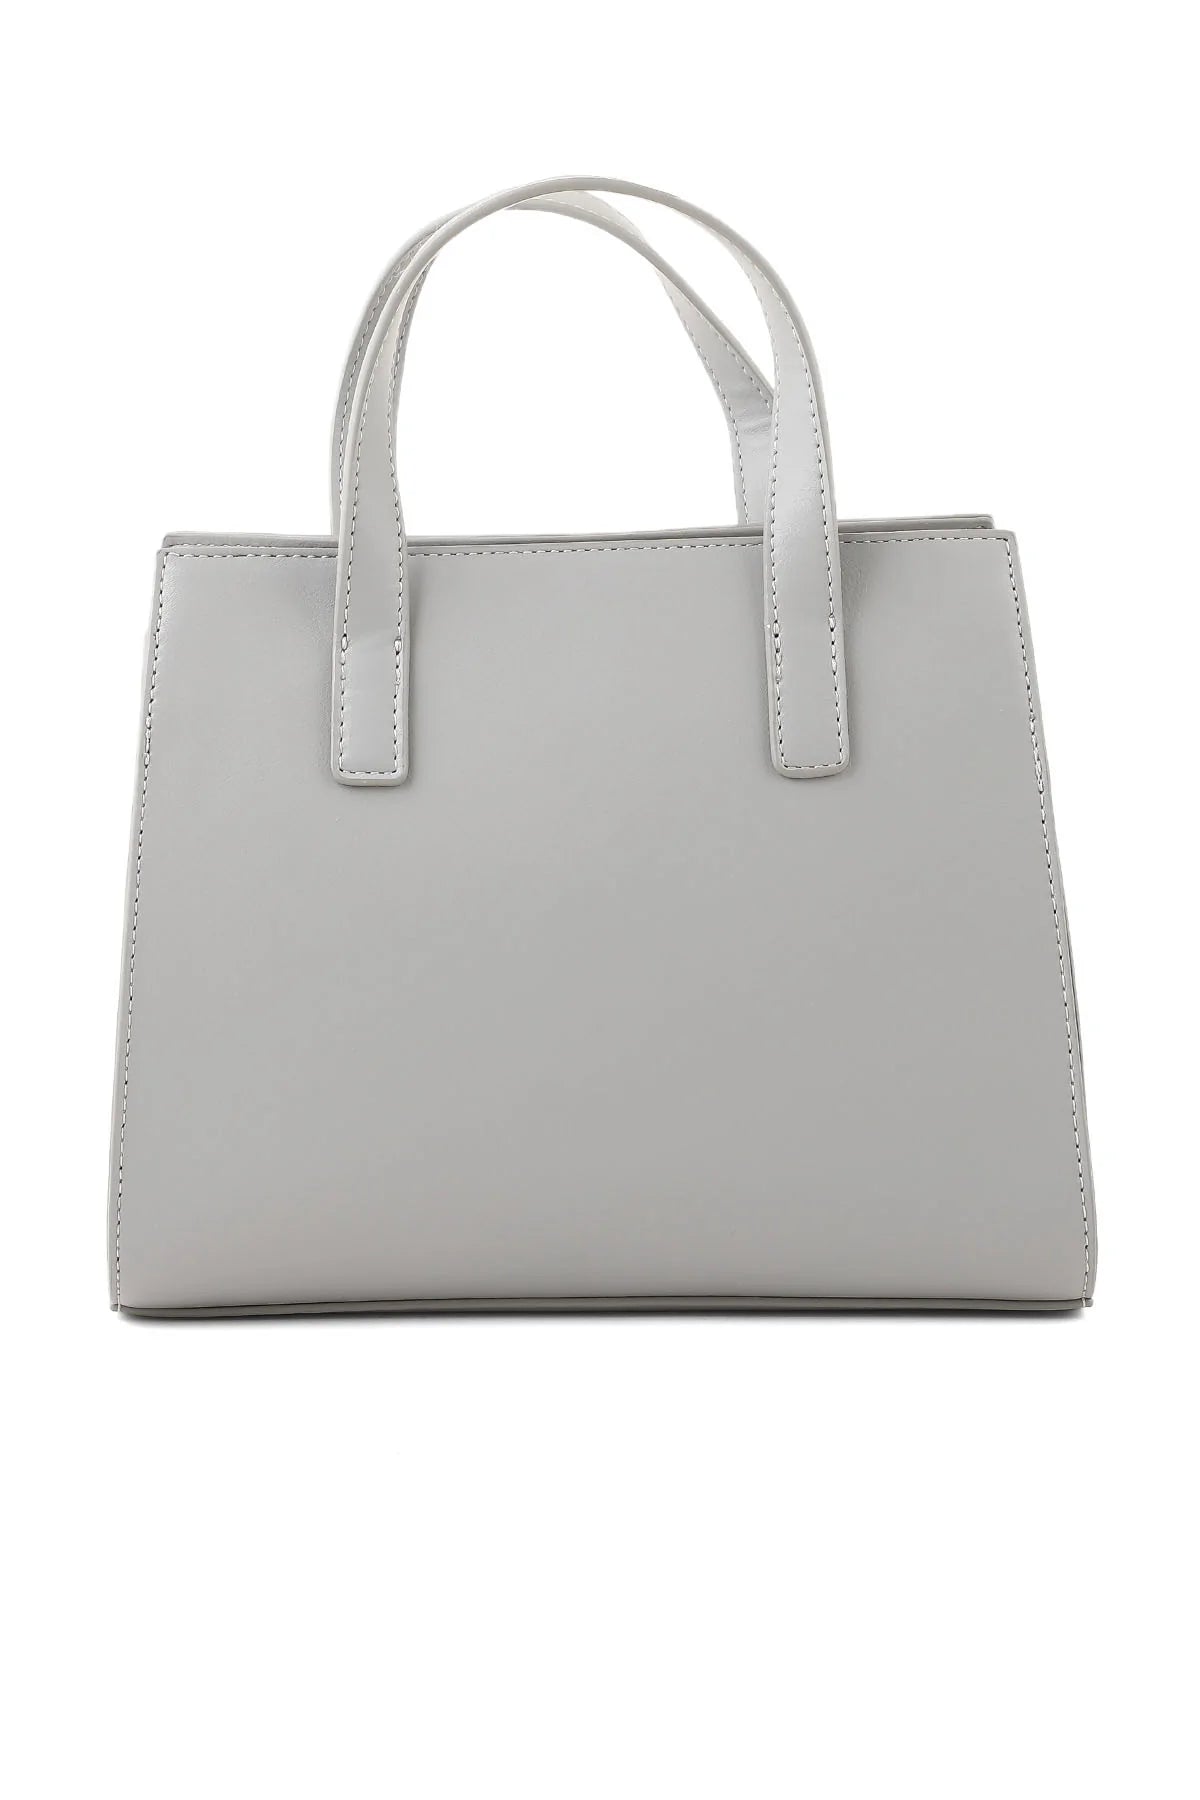 Formal Tote Hand Bags B15016-Grey